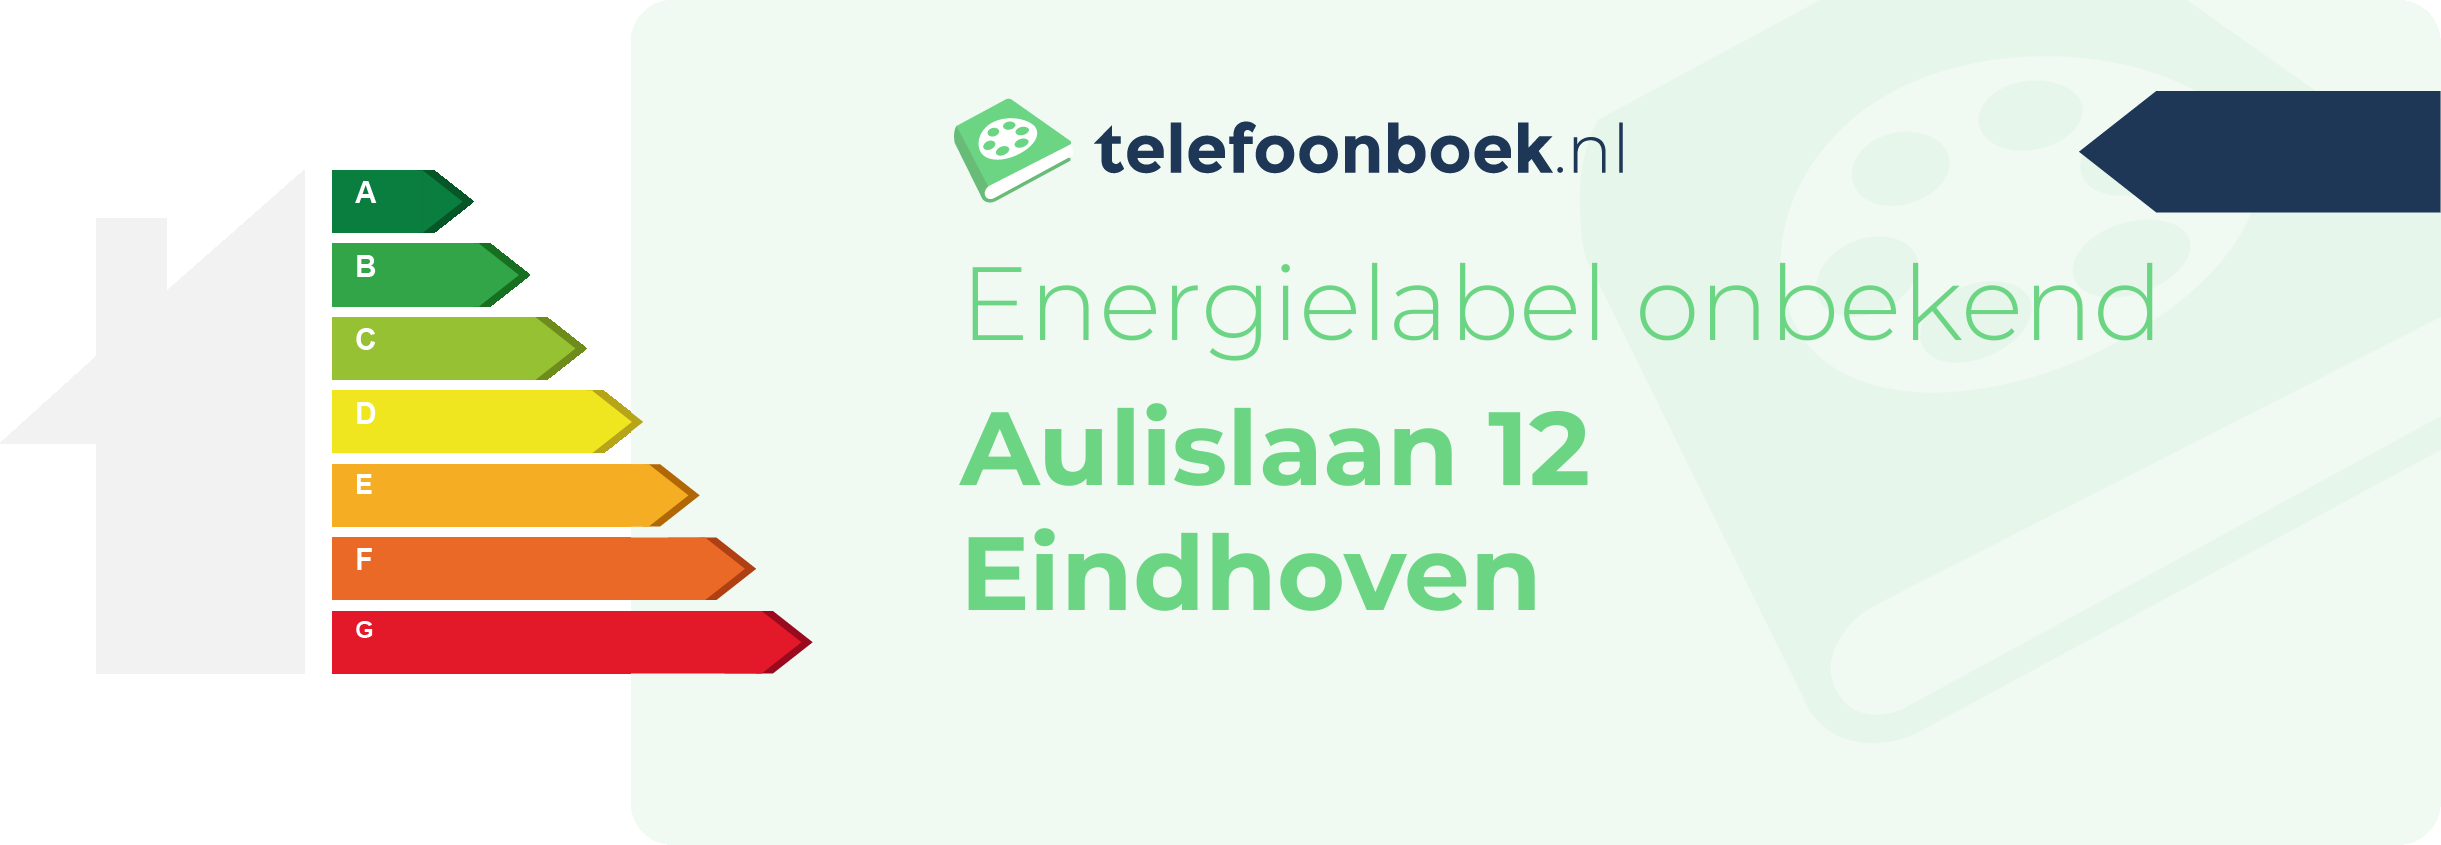 Energielabel Aulislaan 12 Eindhoven